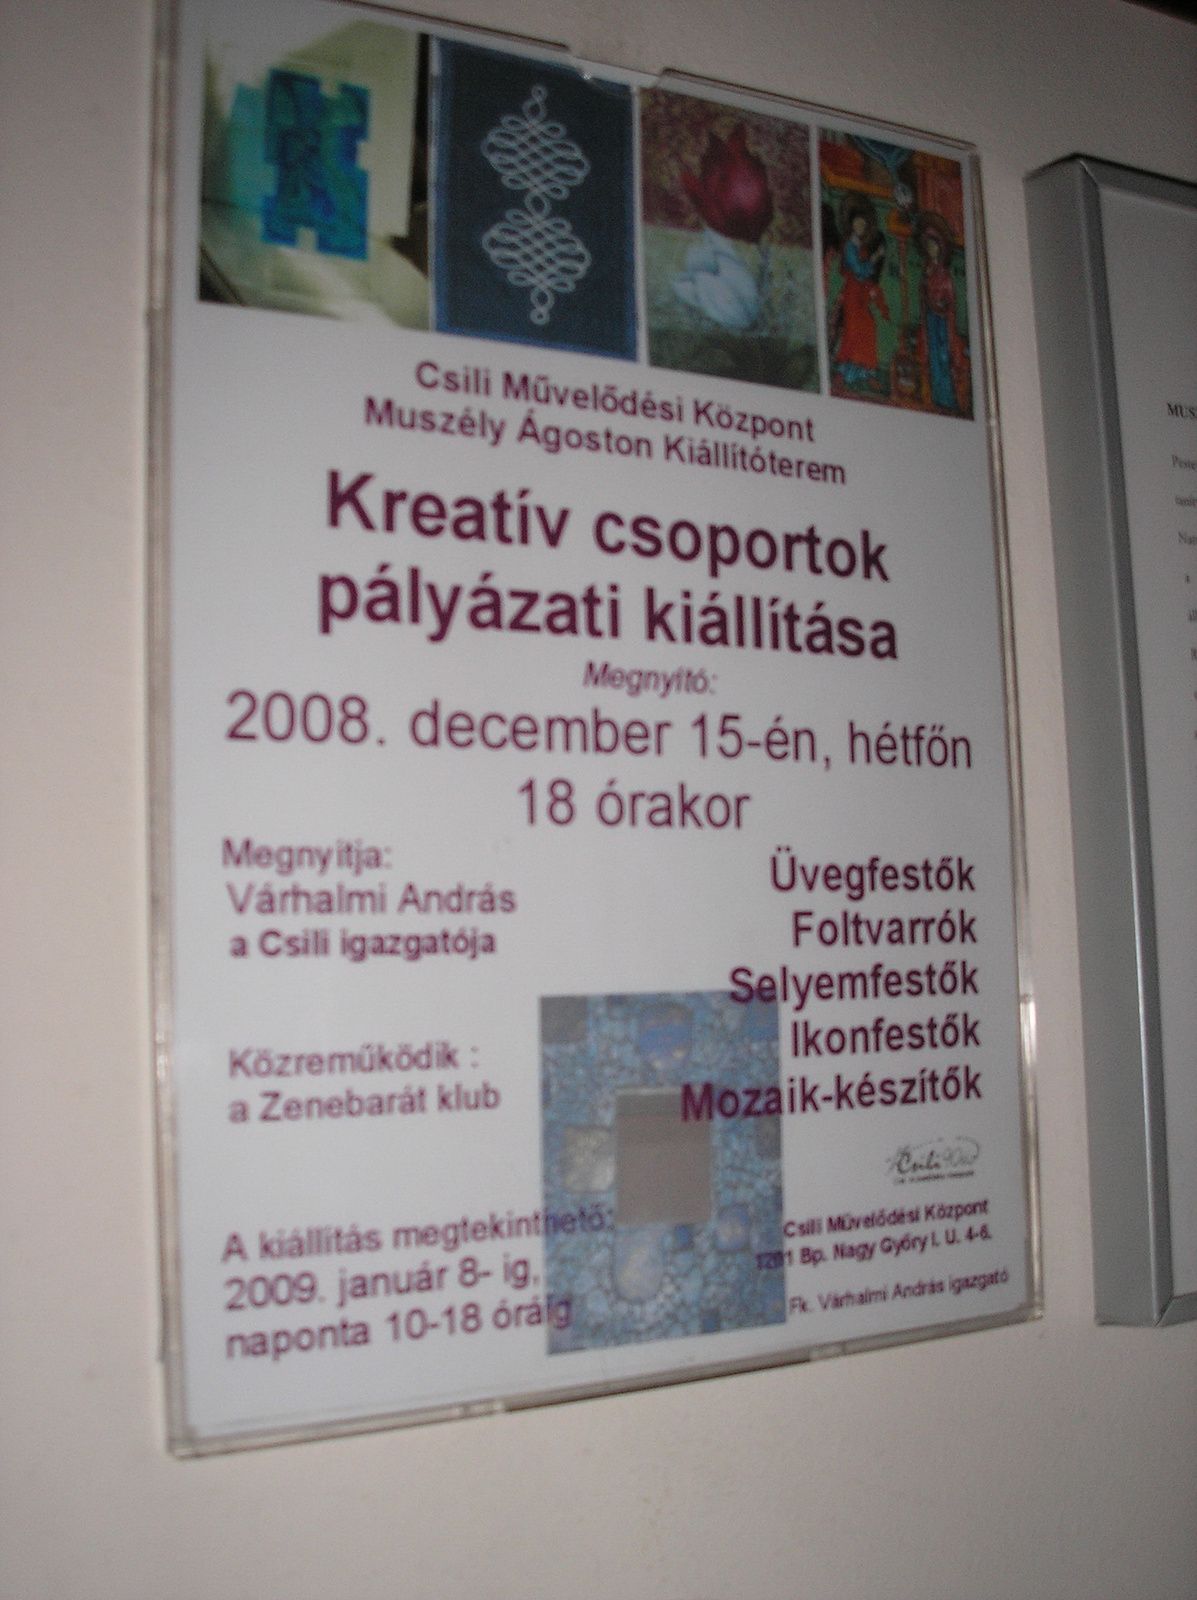 Kreatív csoportok kiállítása - Csili 2008